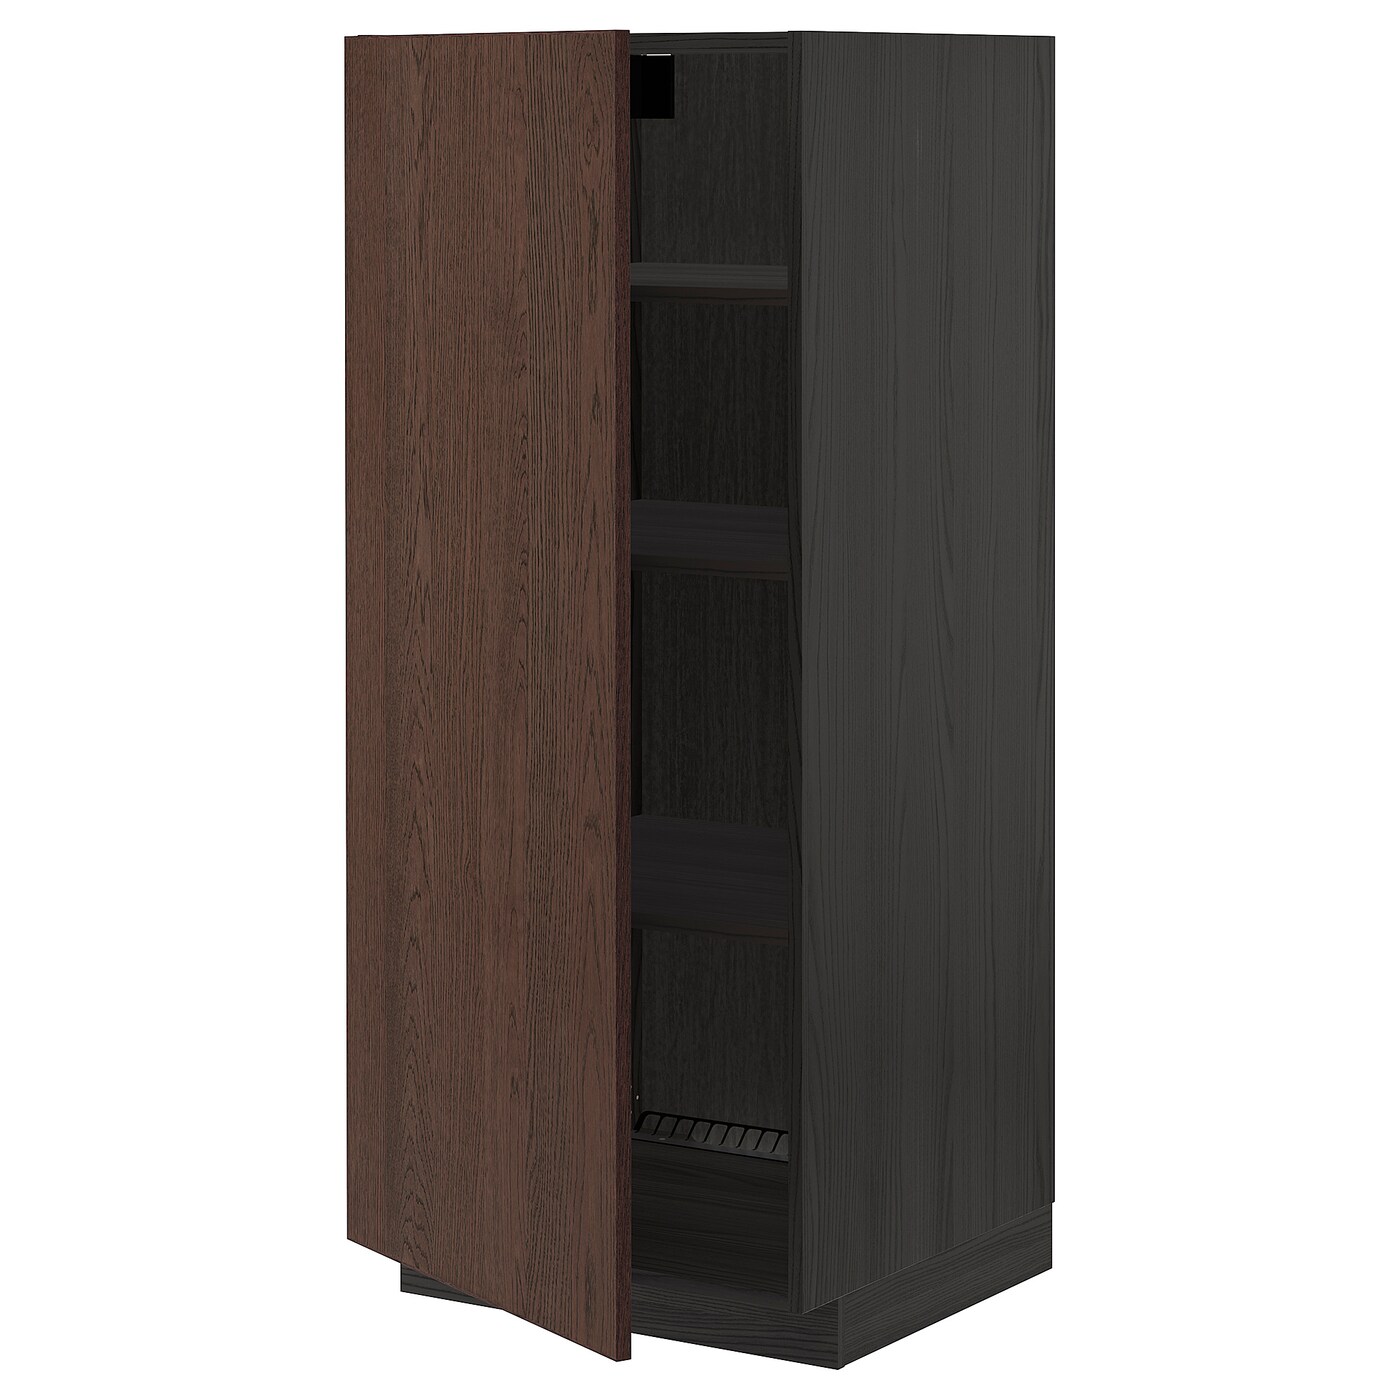 Высокий кухонный шкаф с полками - IKEA METOD/МЕТОД ИКЕА, 140х60х60 см, коричневый/черный